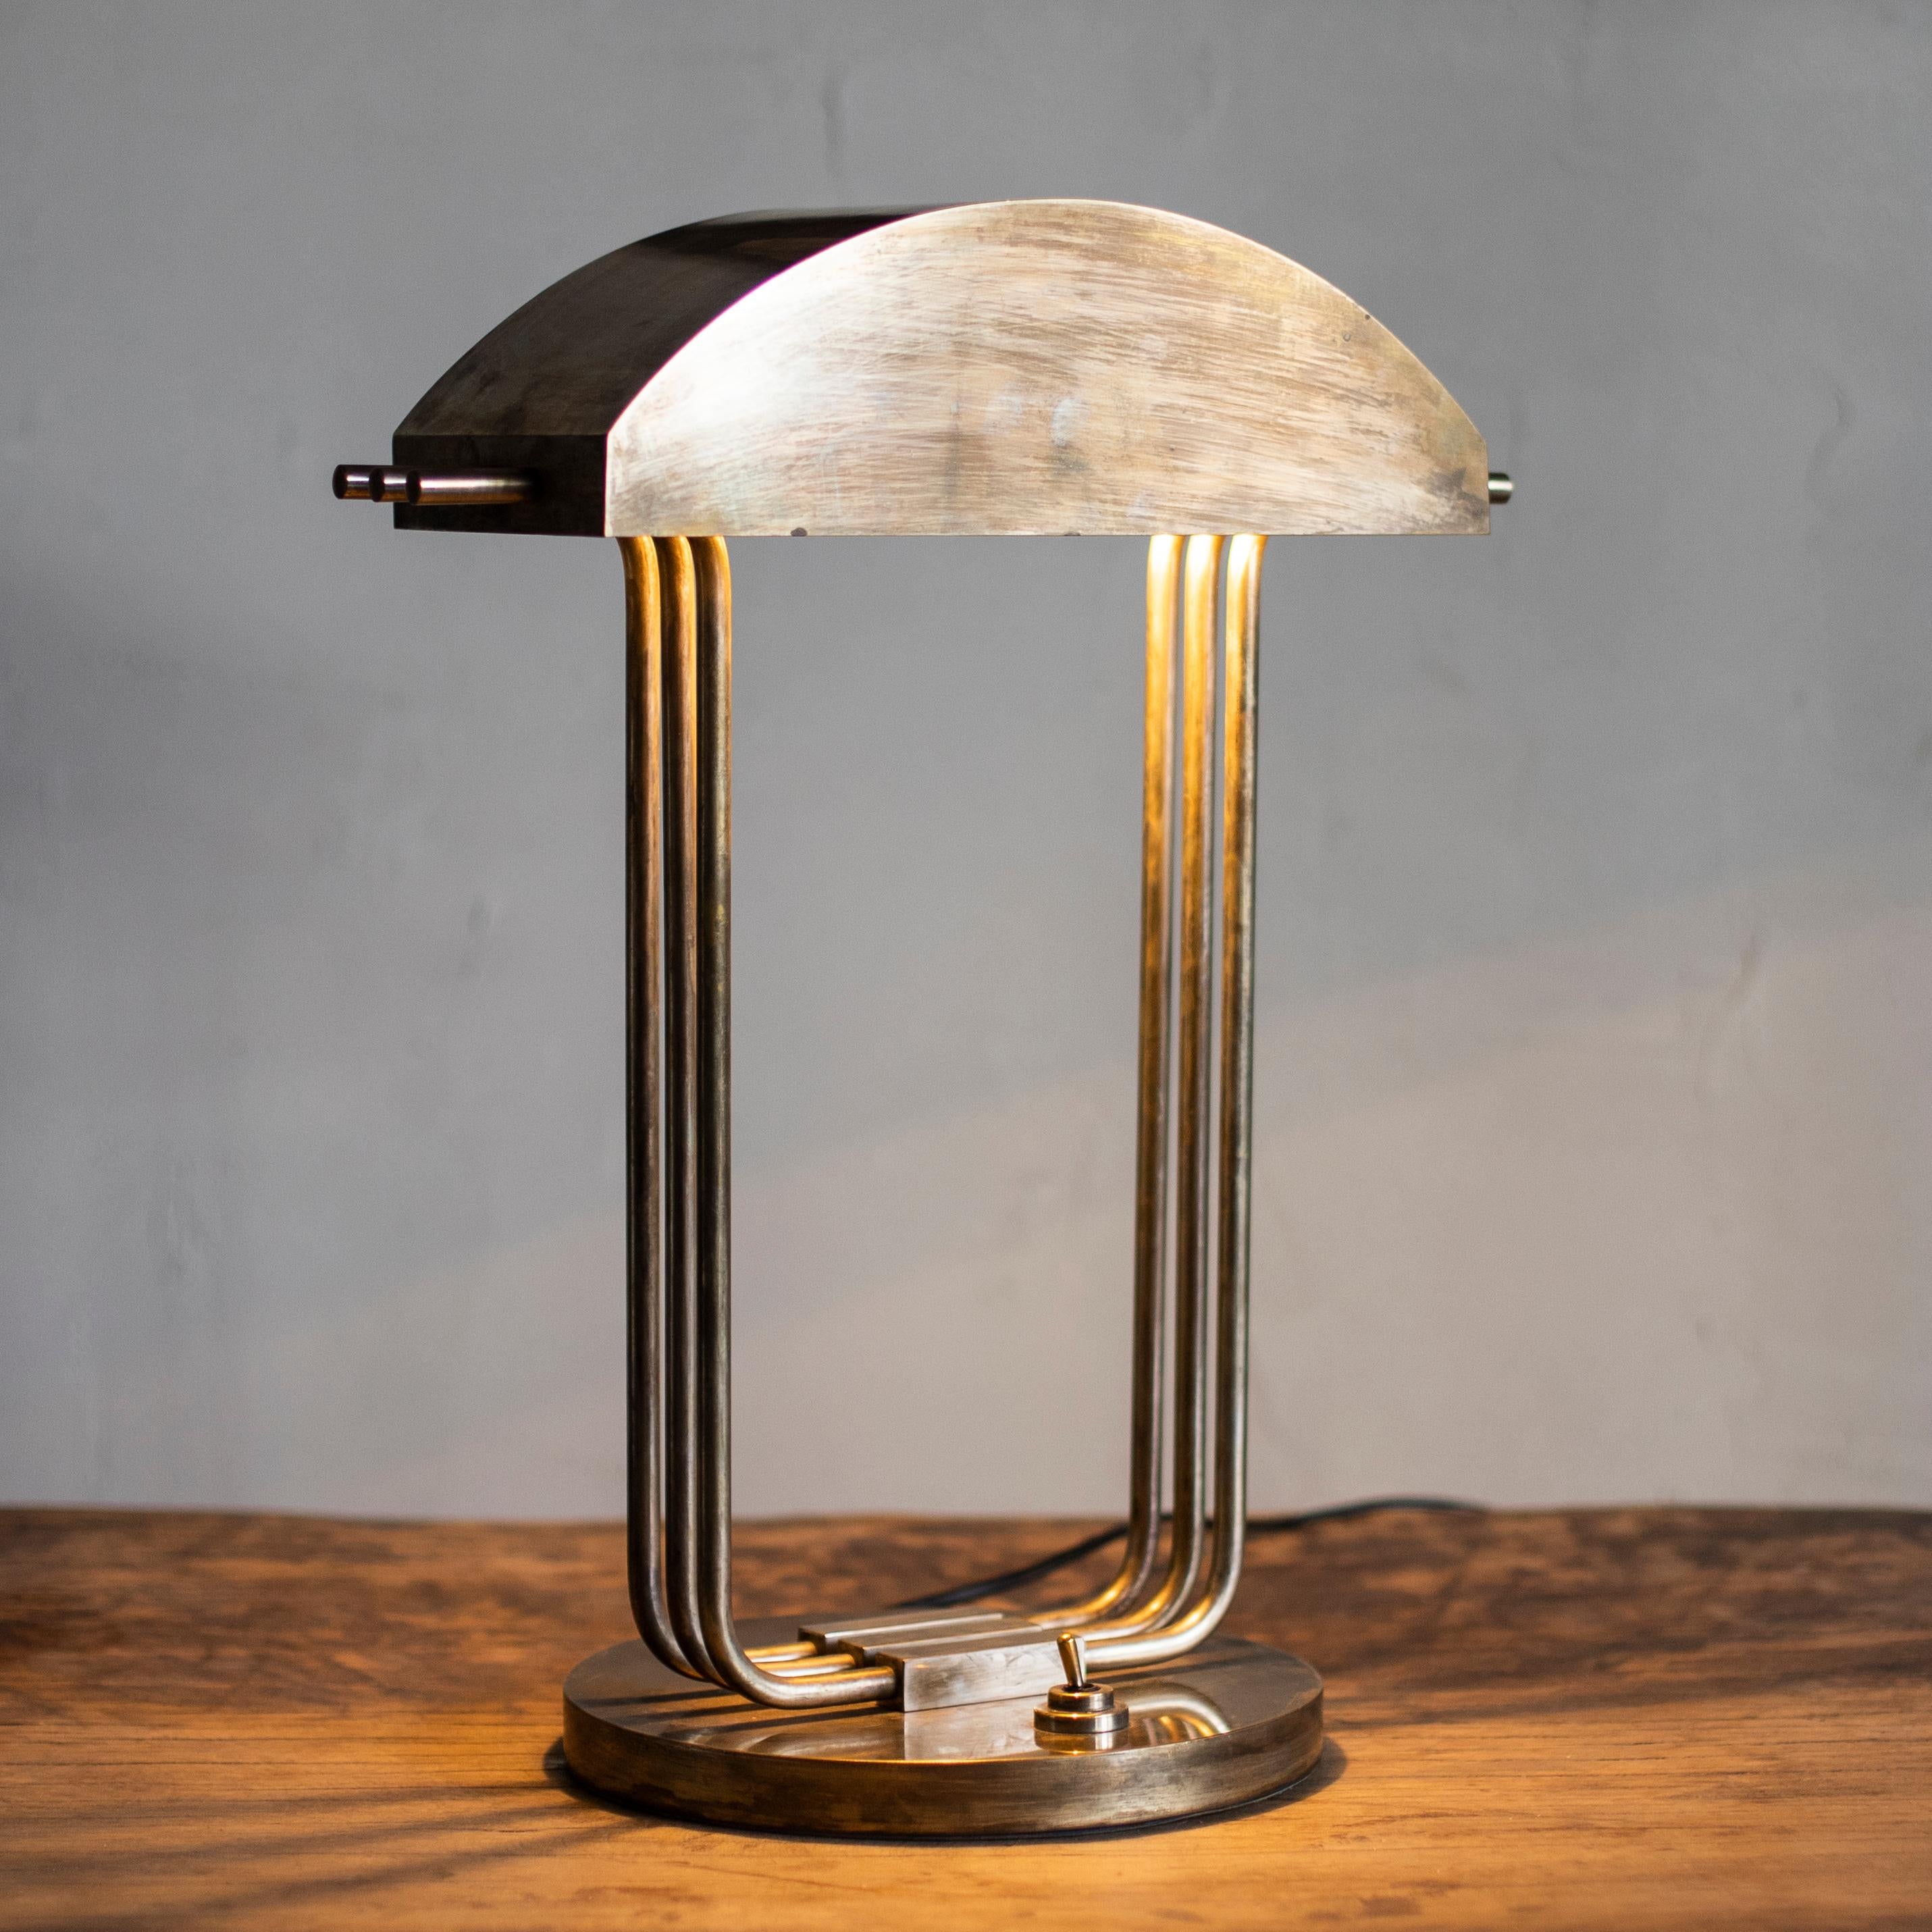 French Marcel Breuer Art Deco Desk Lamp, 1925, Paris